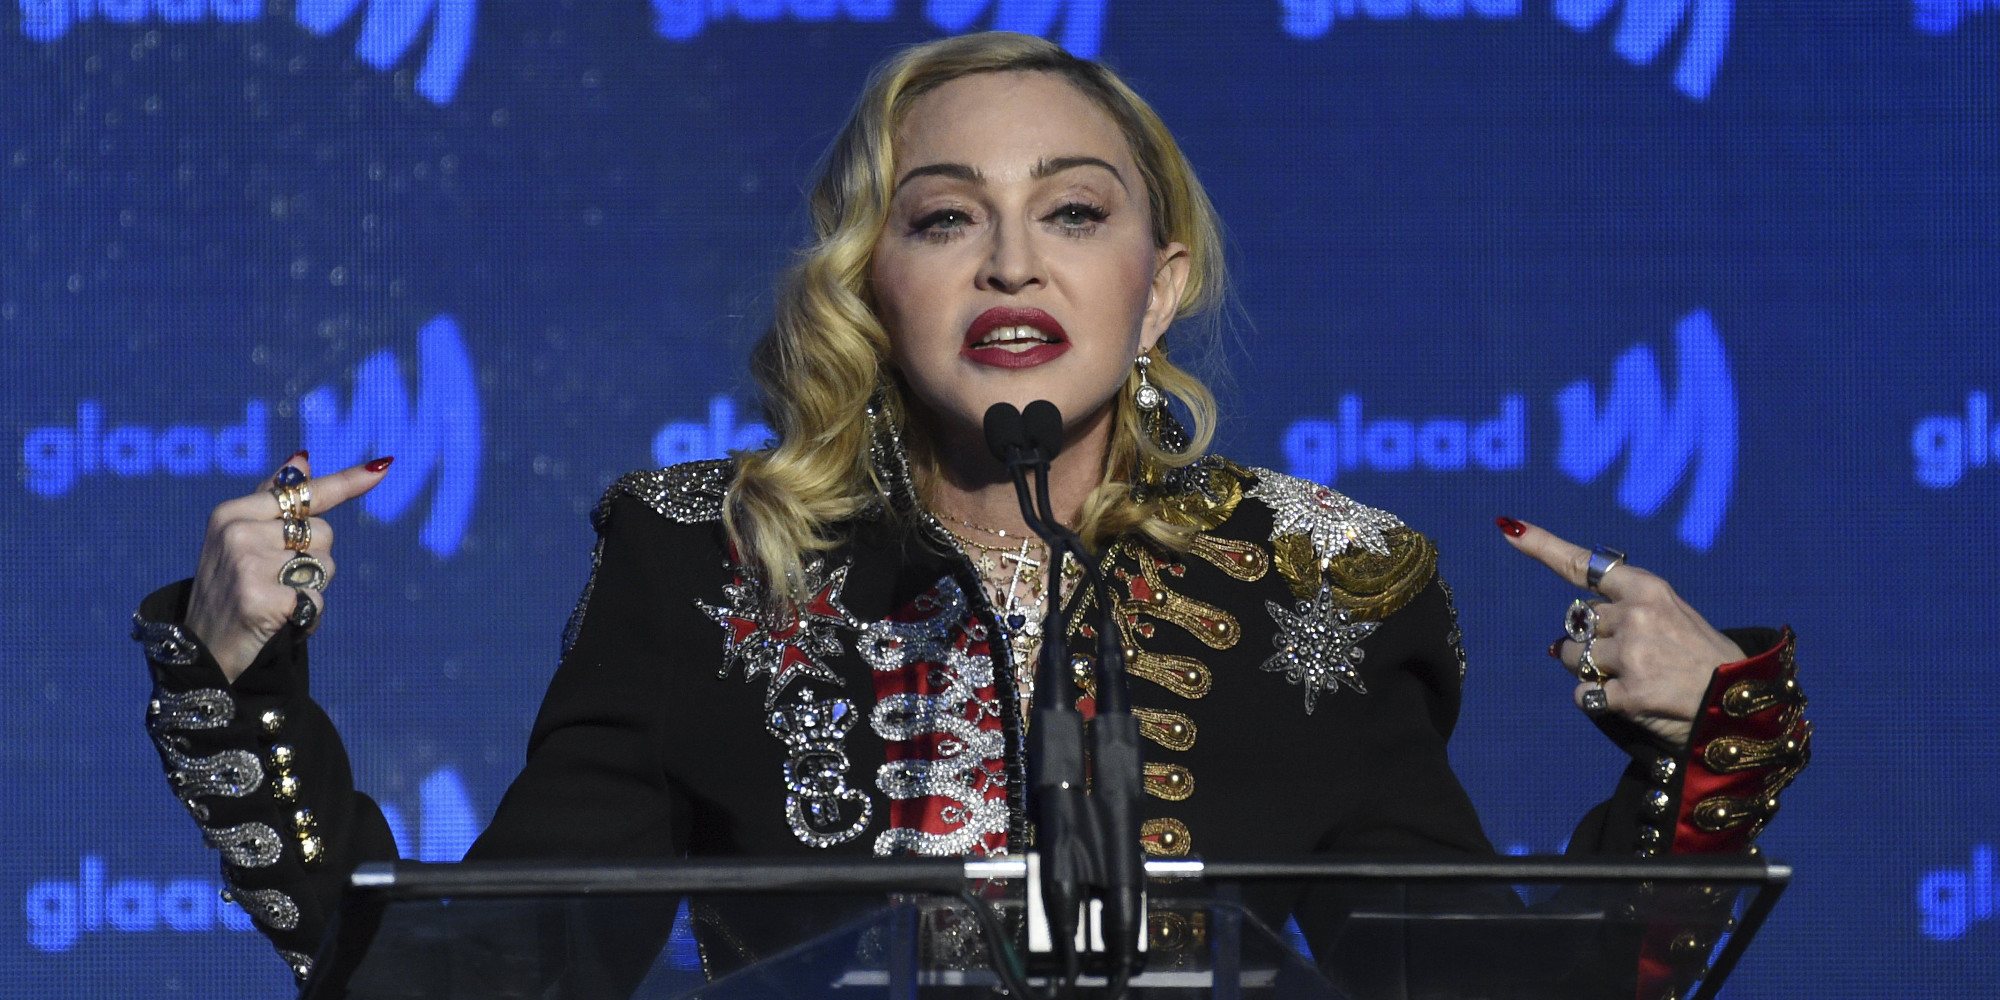 Madonna da positivo en anticuerpos de coronavirus: ha pasado la enfermedad